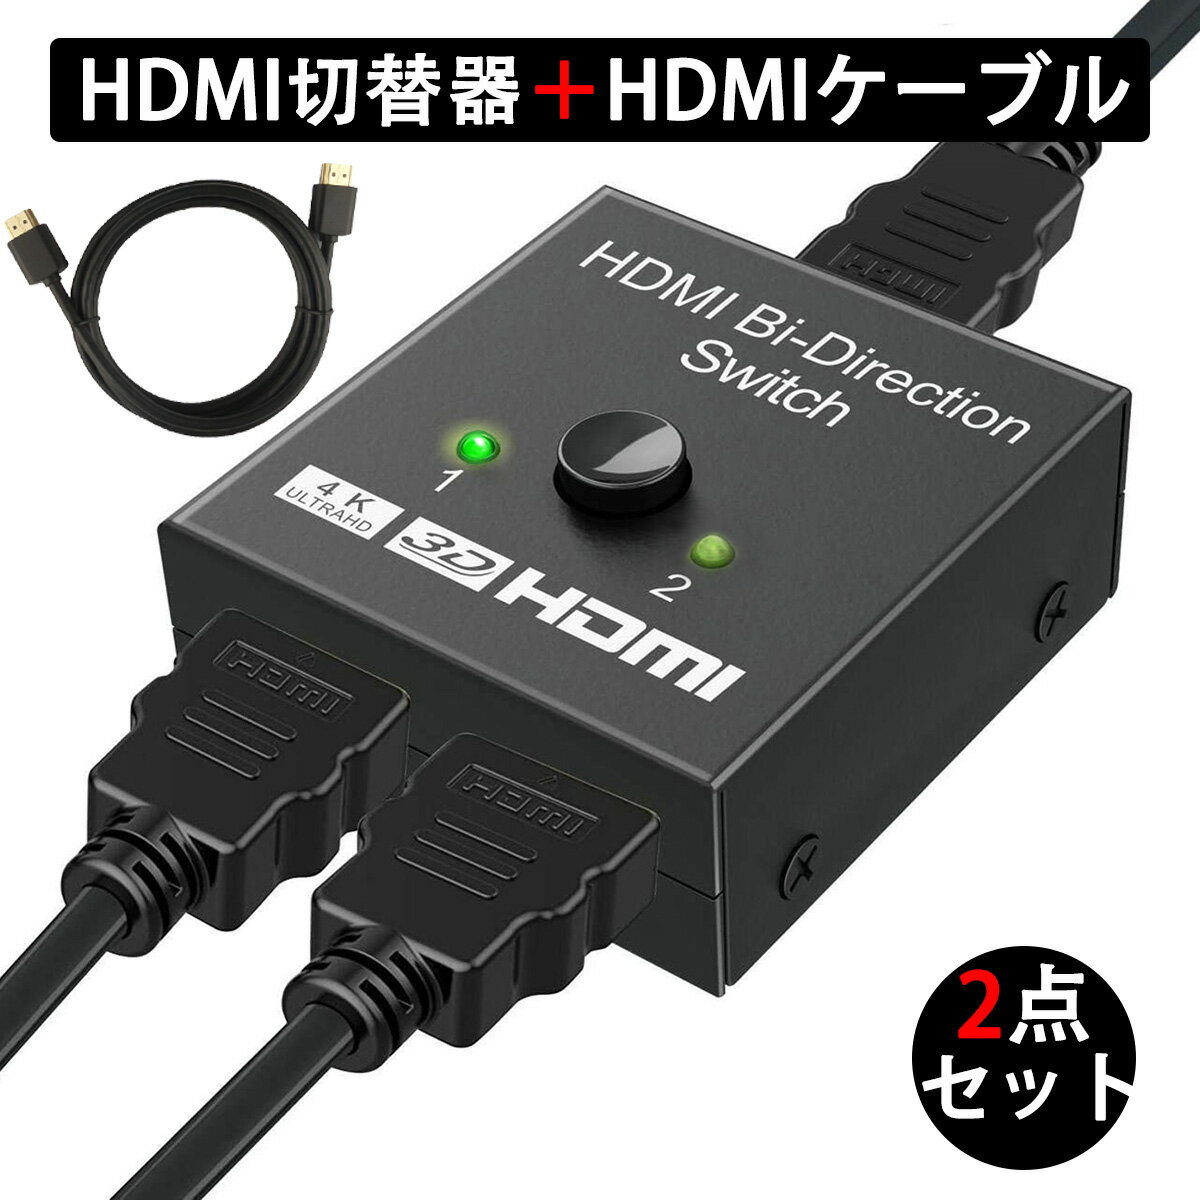 HDMI切替器 ＋ HDMIケーブル 1m セット hdmi セレクター 切替分配器 アダプタ 切替機 切り替え HDMI コネクタ hdmi ハブ hub 分配 スプリッター 二股 双方向 2入力1出力 or 1入力2出力 4k chromecast ※同時出力不可